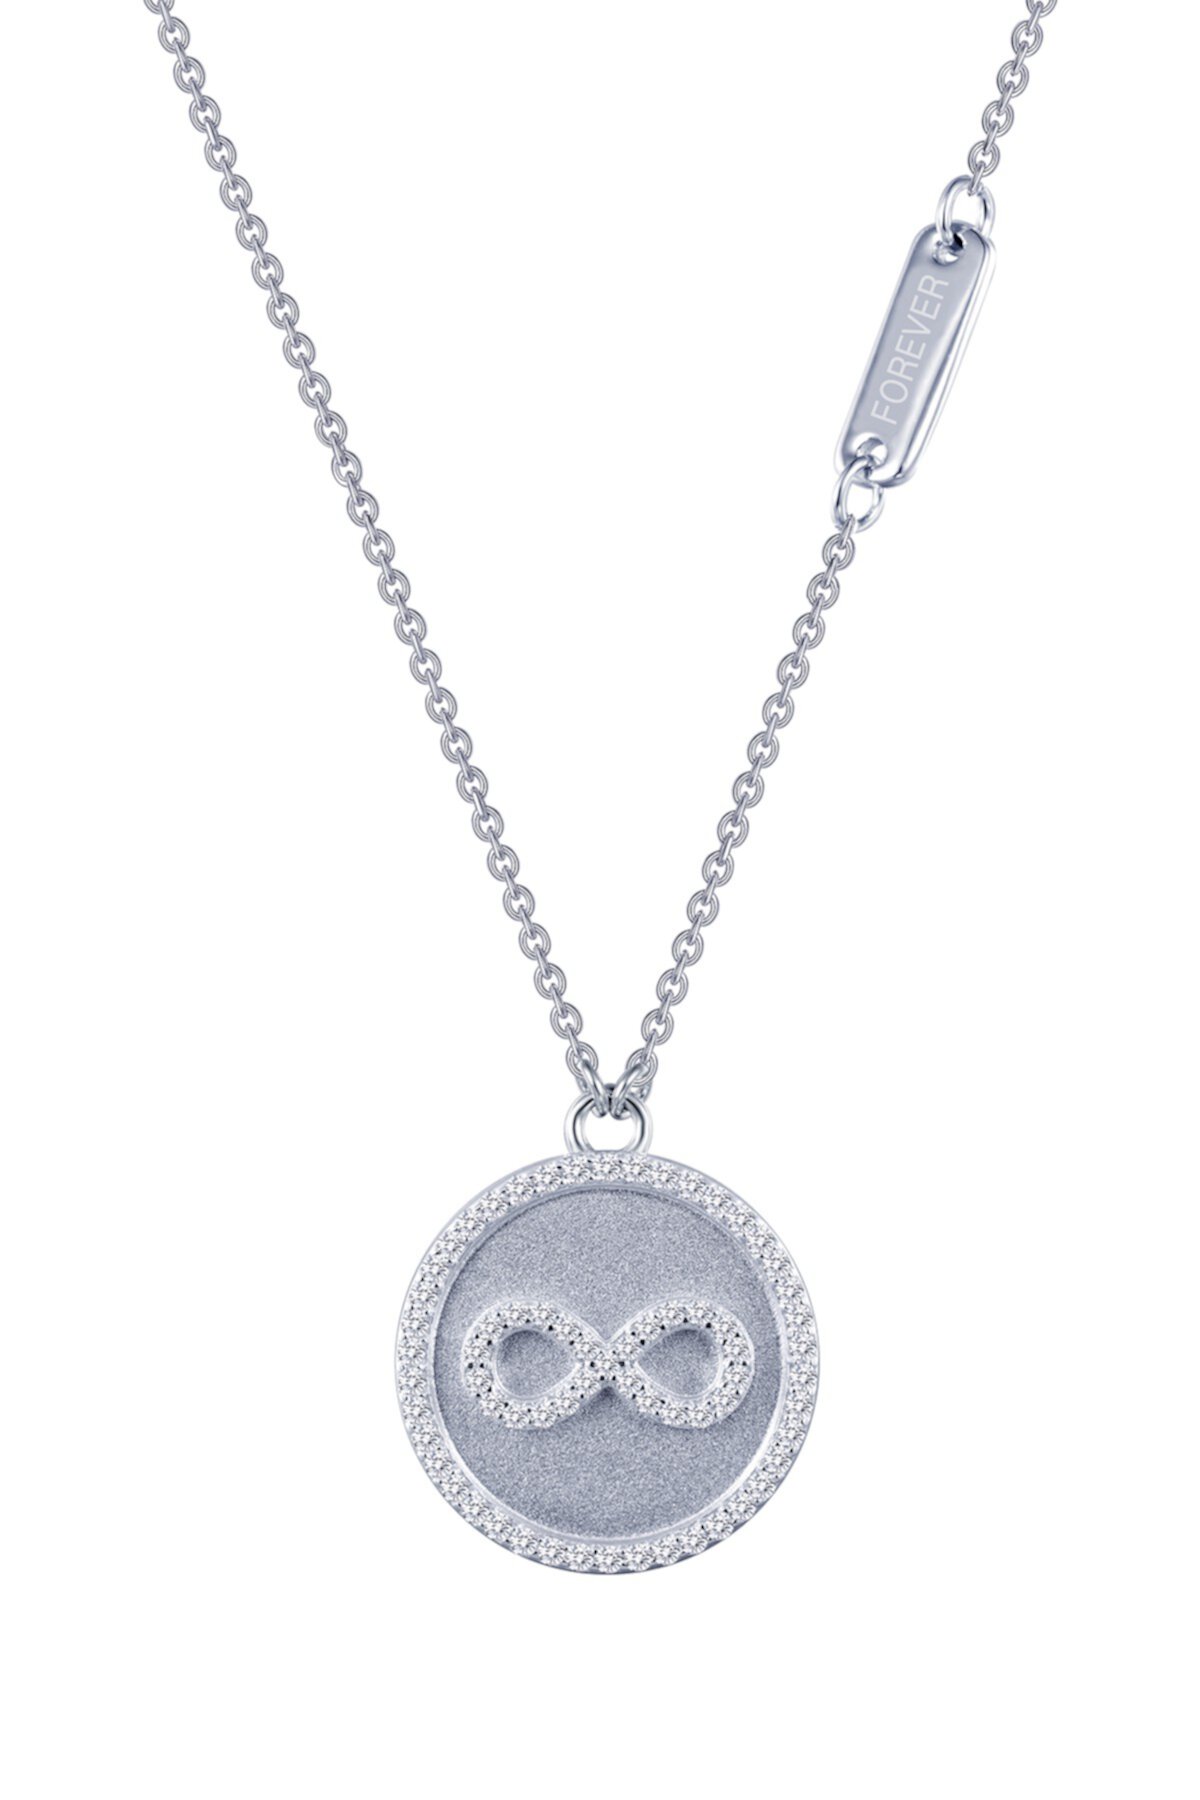 Стерлинговое серебро с платиновым покрытием, ожерелье с подвеской в виде бесконечности, имитация бриллианта, с микро-паве LaFonn